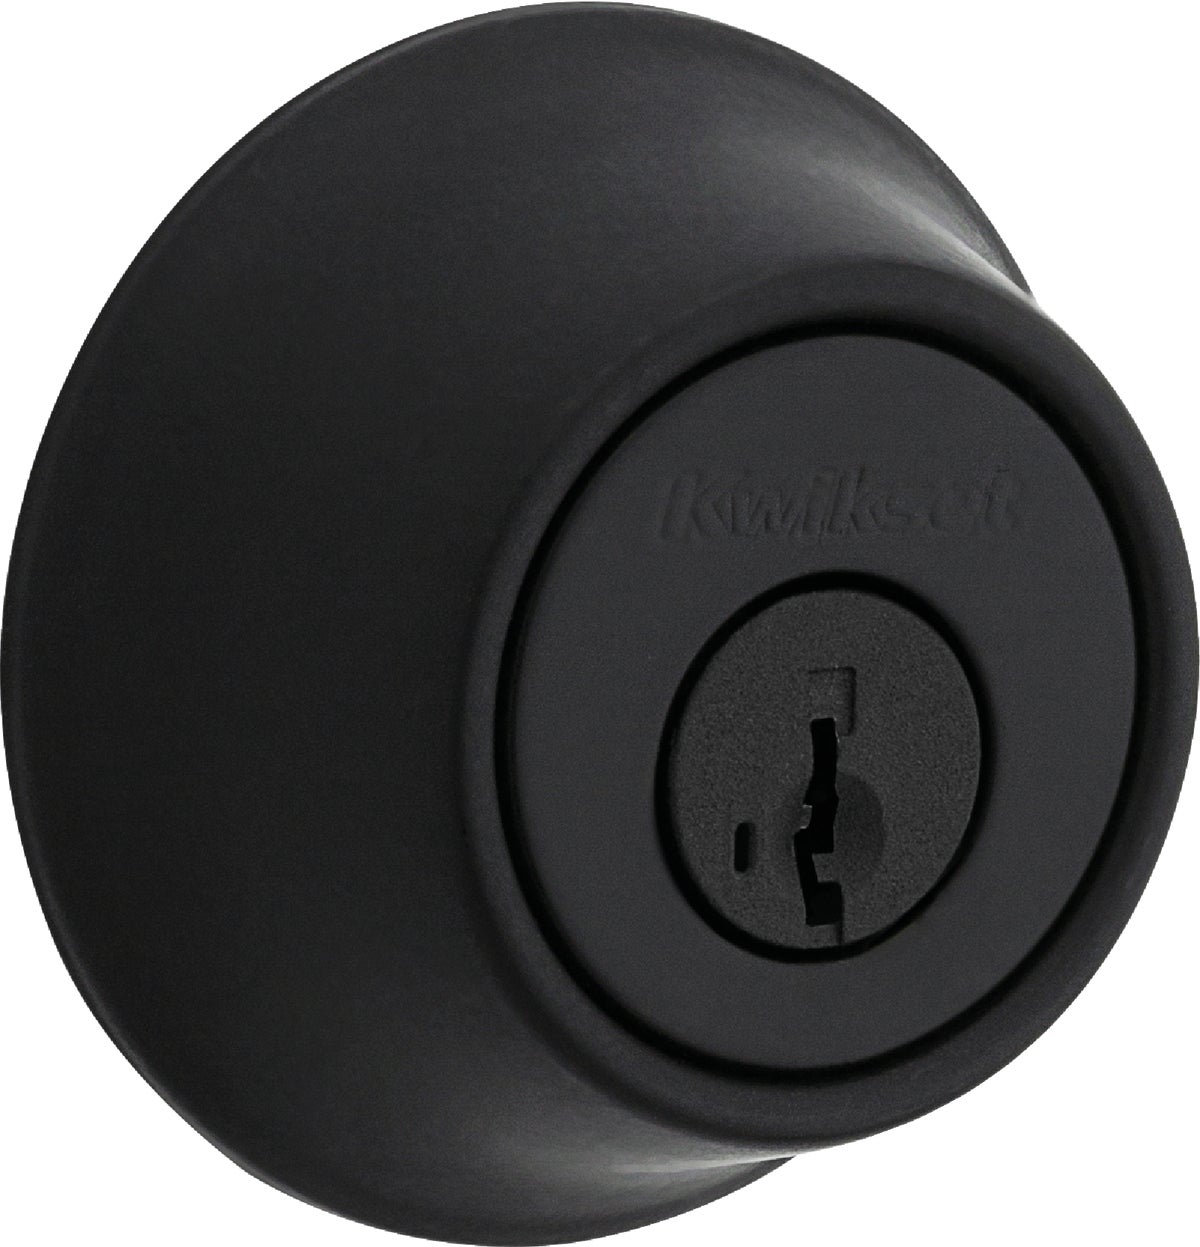 Buy Kwikset 660 Deadbolt Lock with SmartKey